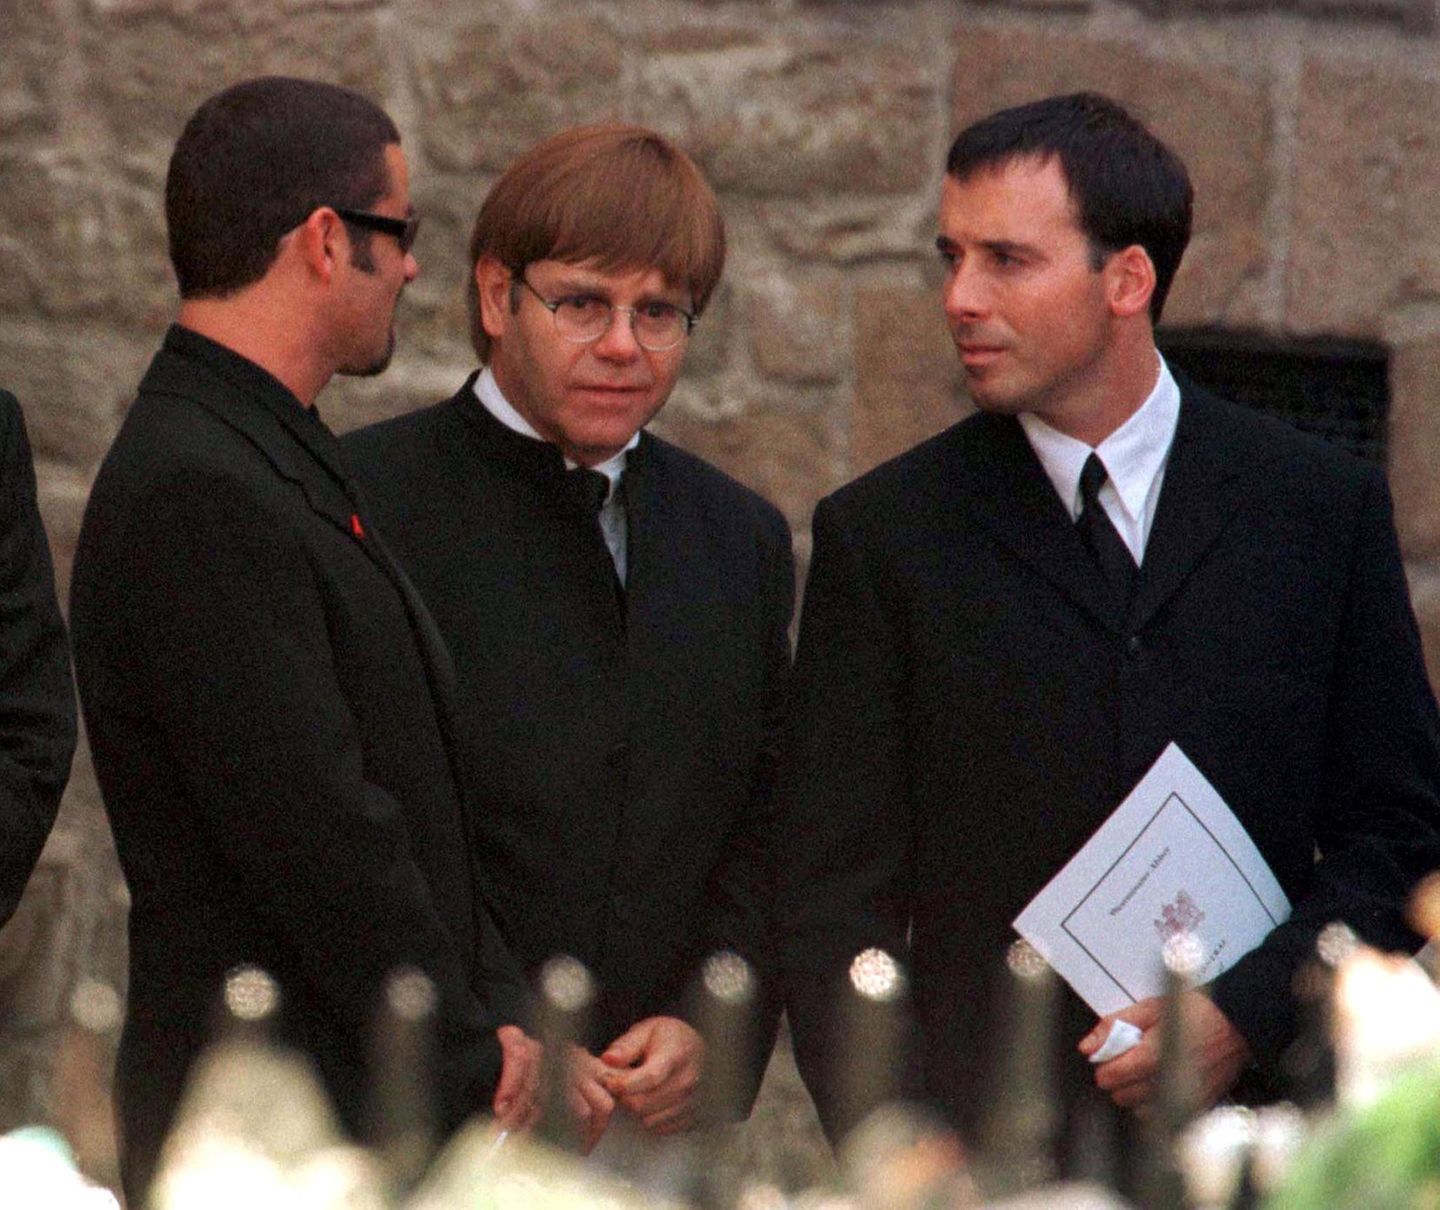 Sänger George Michael, Pop-Star Elton John und dessen Lebensgefährte David Furnish erweisen Diana die letzte Ehre.